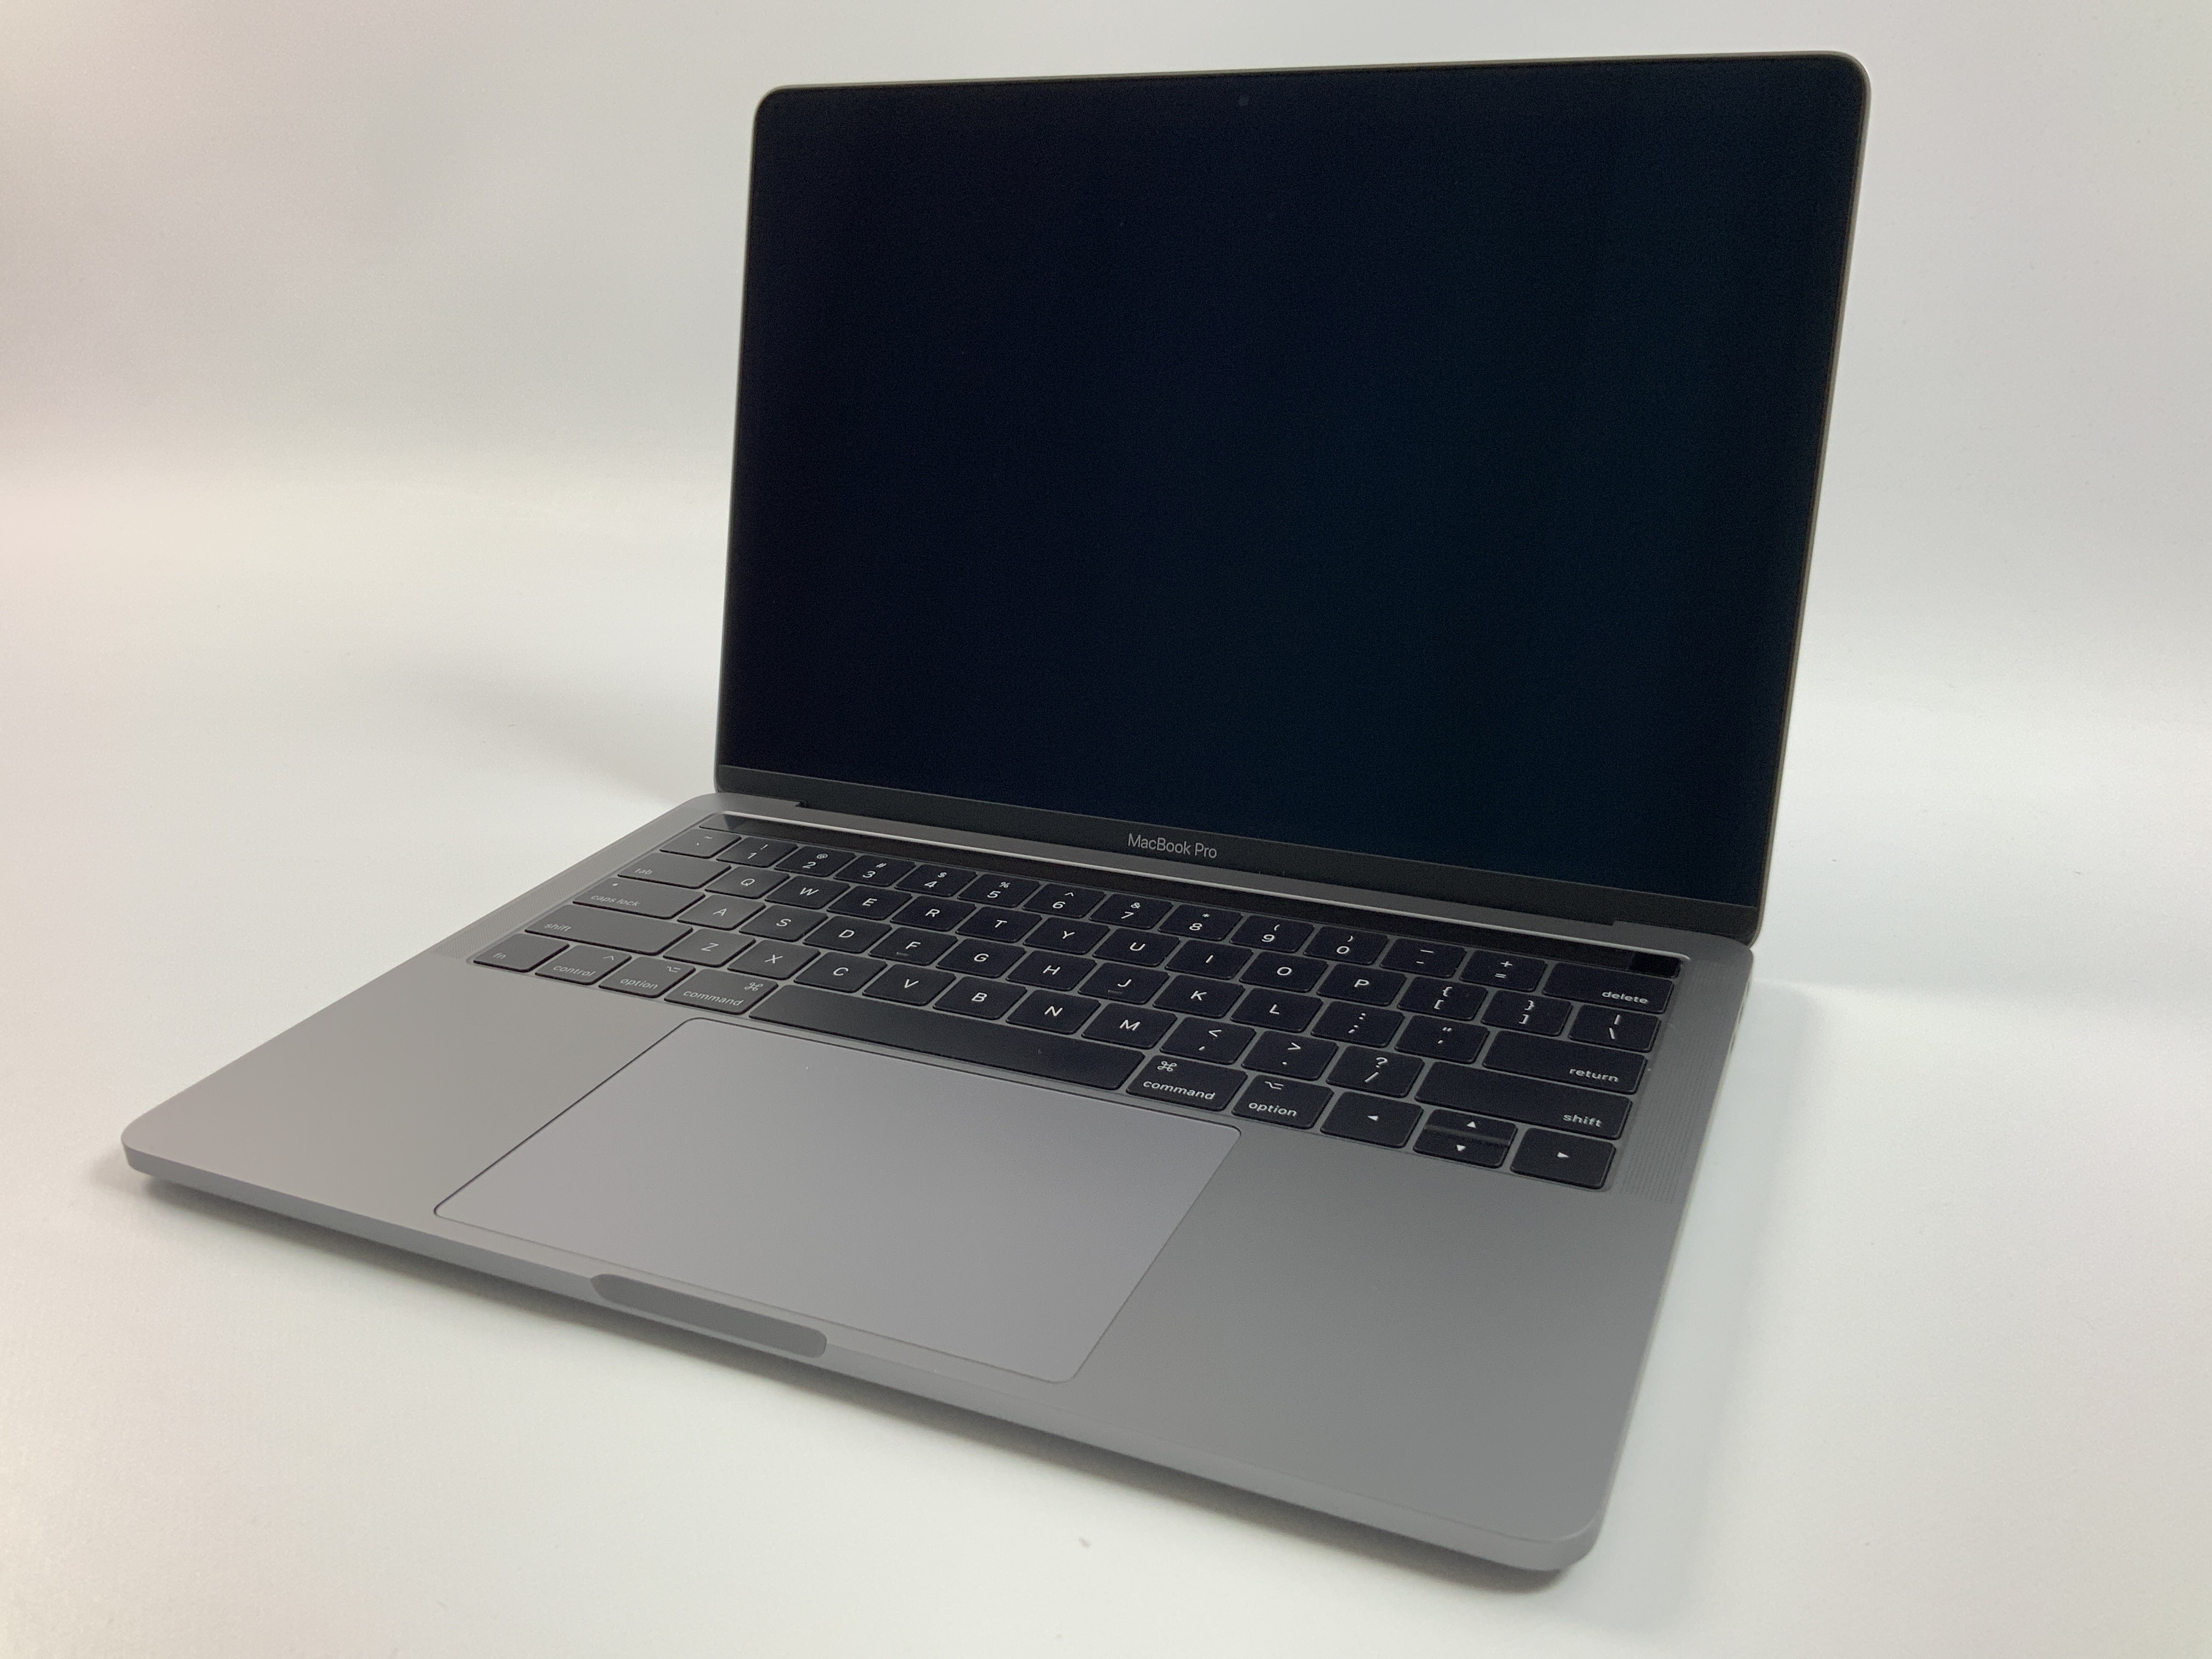 MacBook Pro 13" 4TBT Mid 2017 (Intel Core i5 3.1 GHz 8 GB RAM 512 GB SSD), Space Gray, Intel Core i5 3.1 GHz, 8 GB RAM, 512 GB SSD, Afbeelding 1